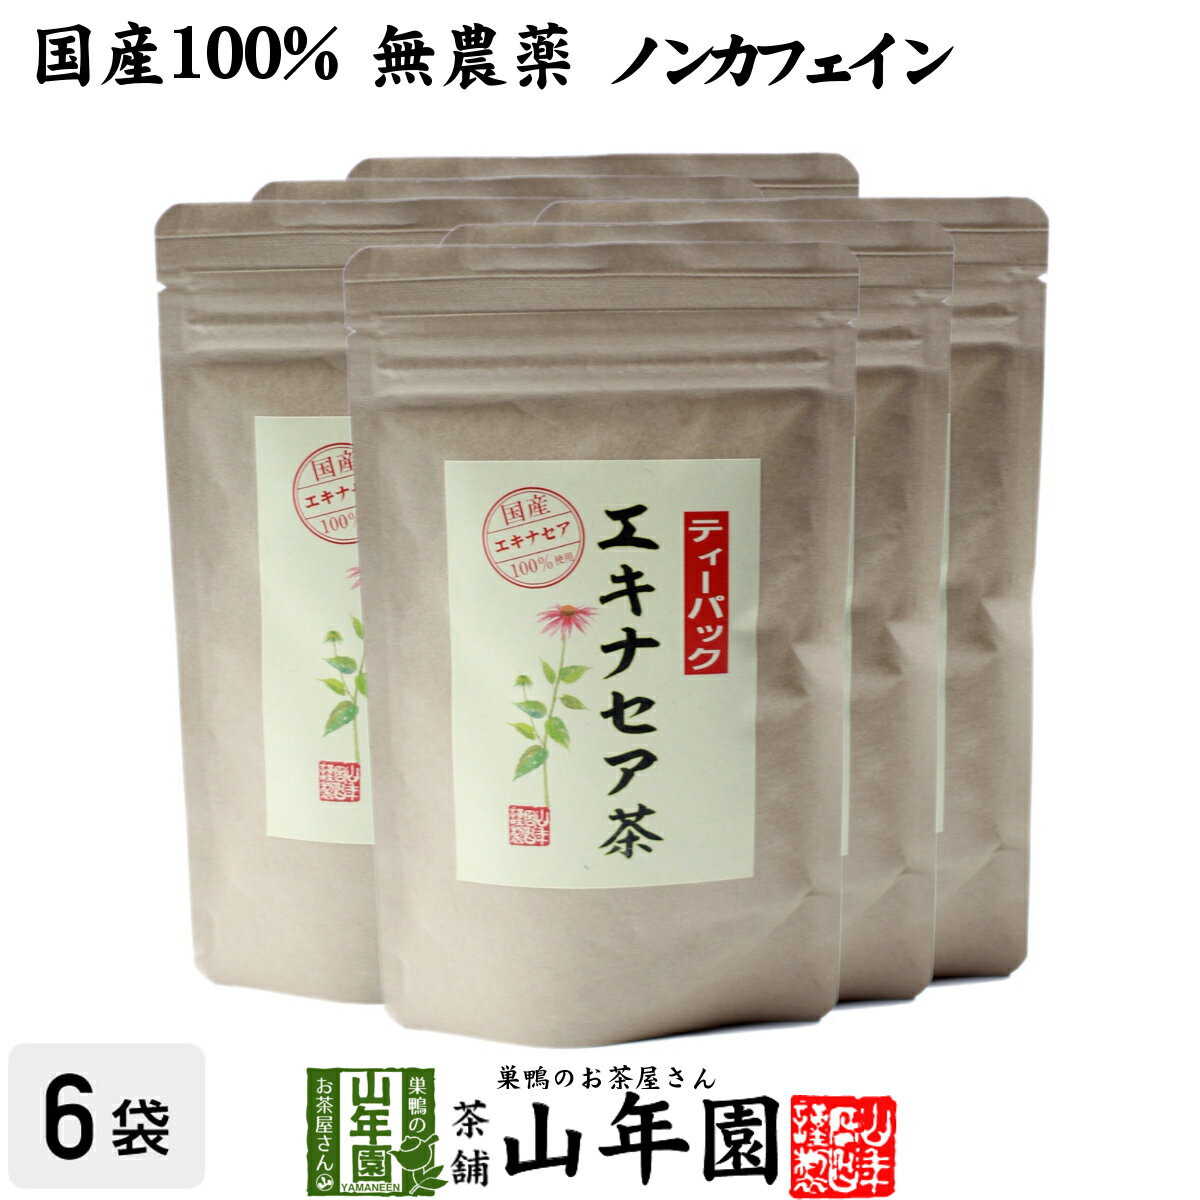 【国産 100%】エキナセア茶 2g×10パック×6袋セット